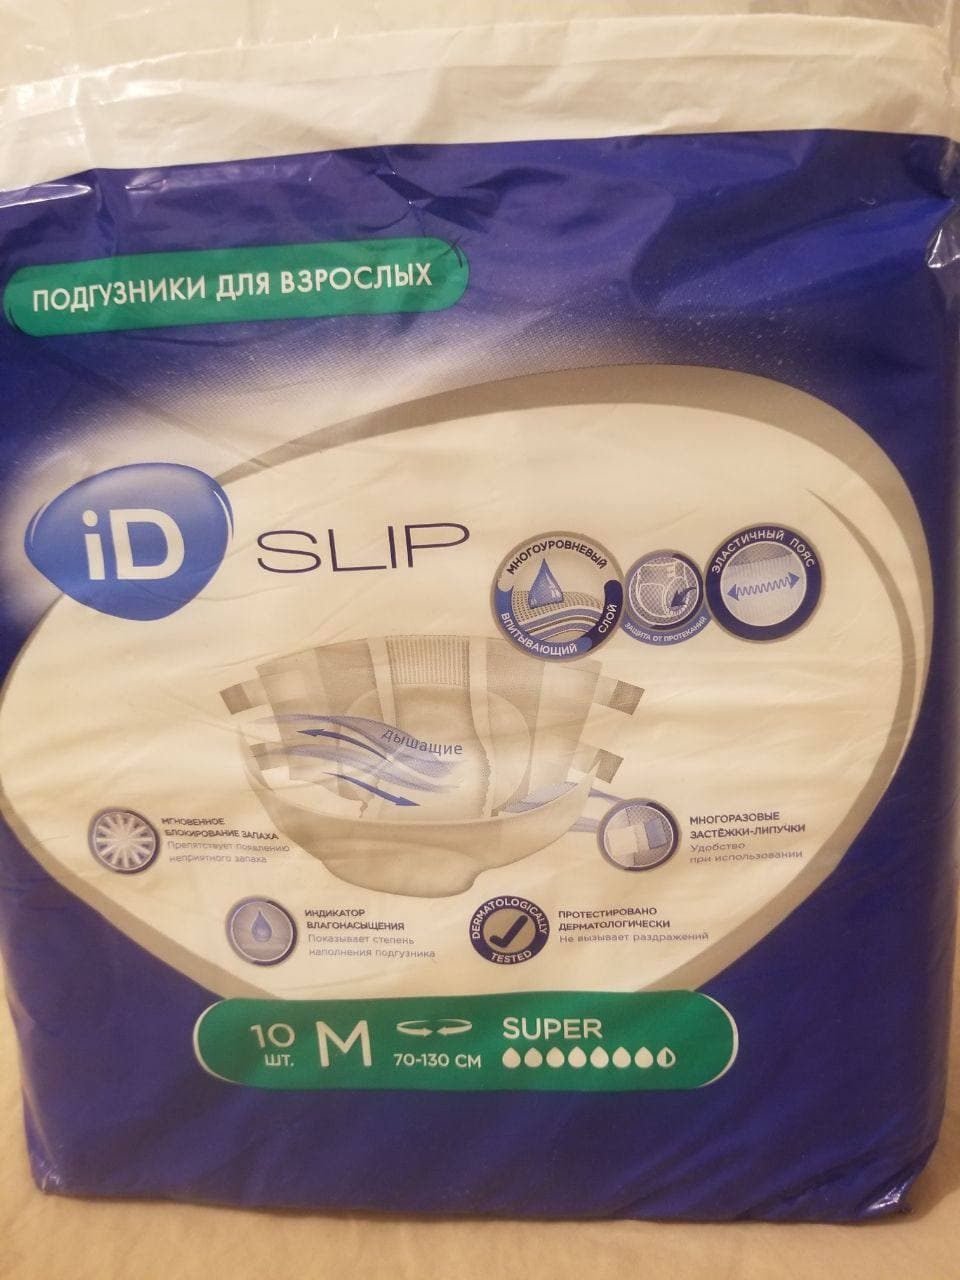 iD SLIP подгузники для взрослых - Очень советую!